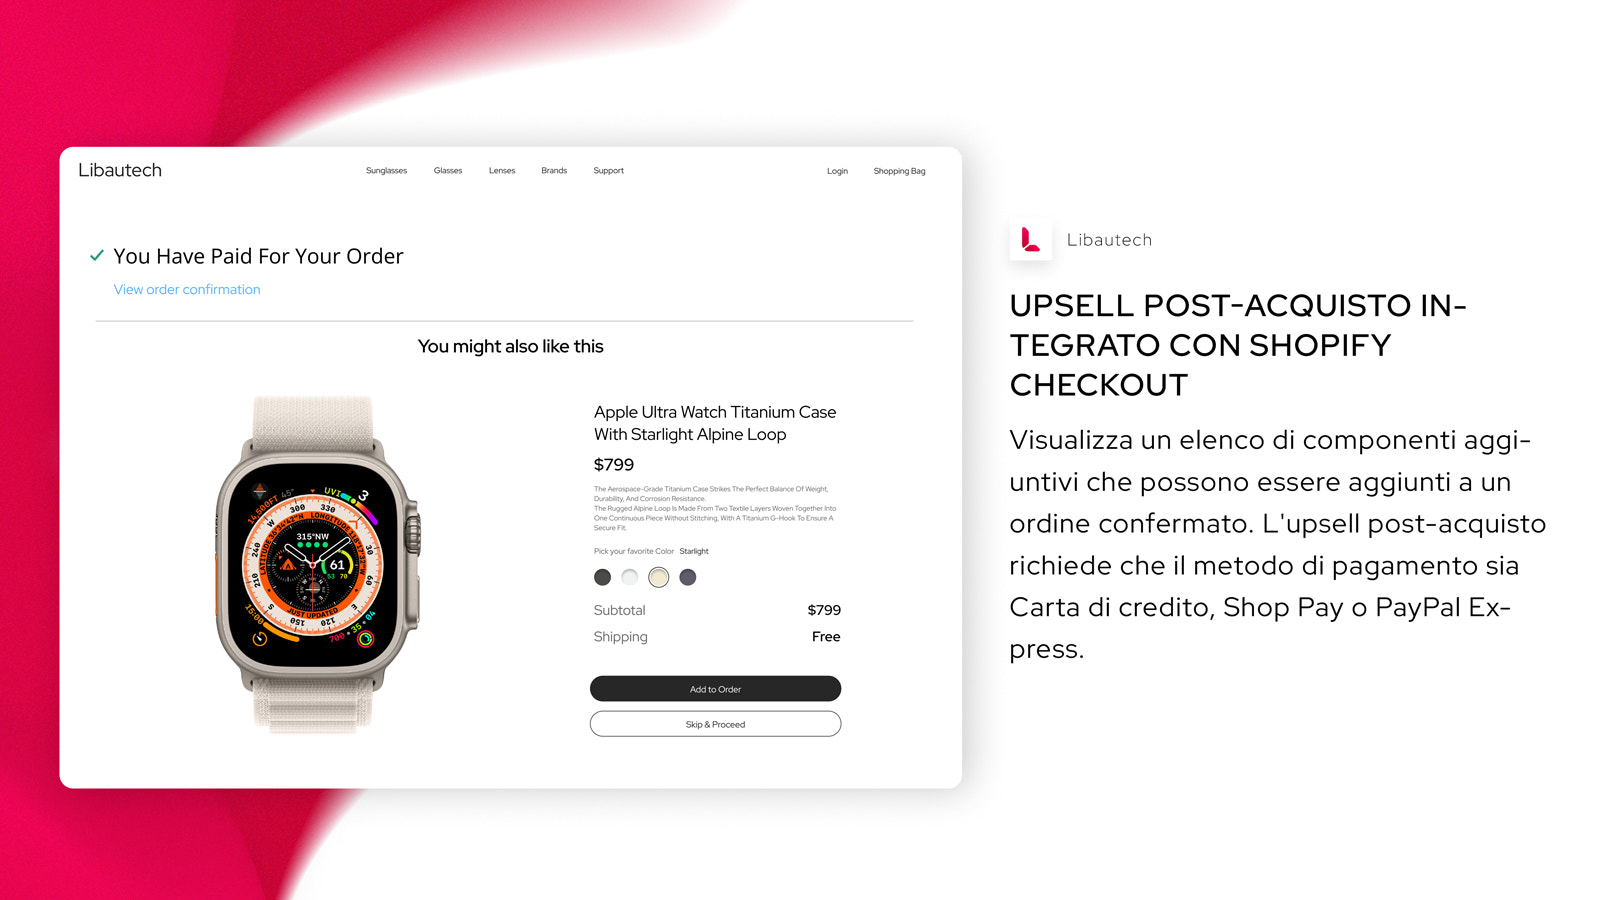 Upsell post-acquisto integrato con Shopify Checkout